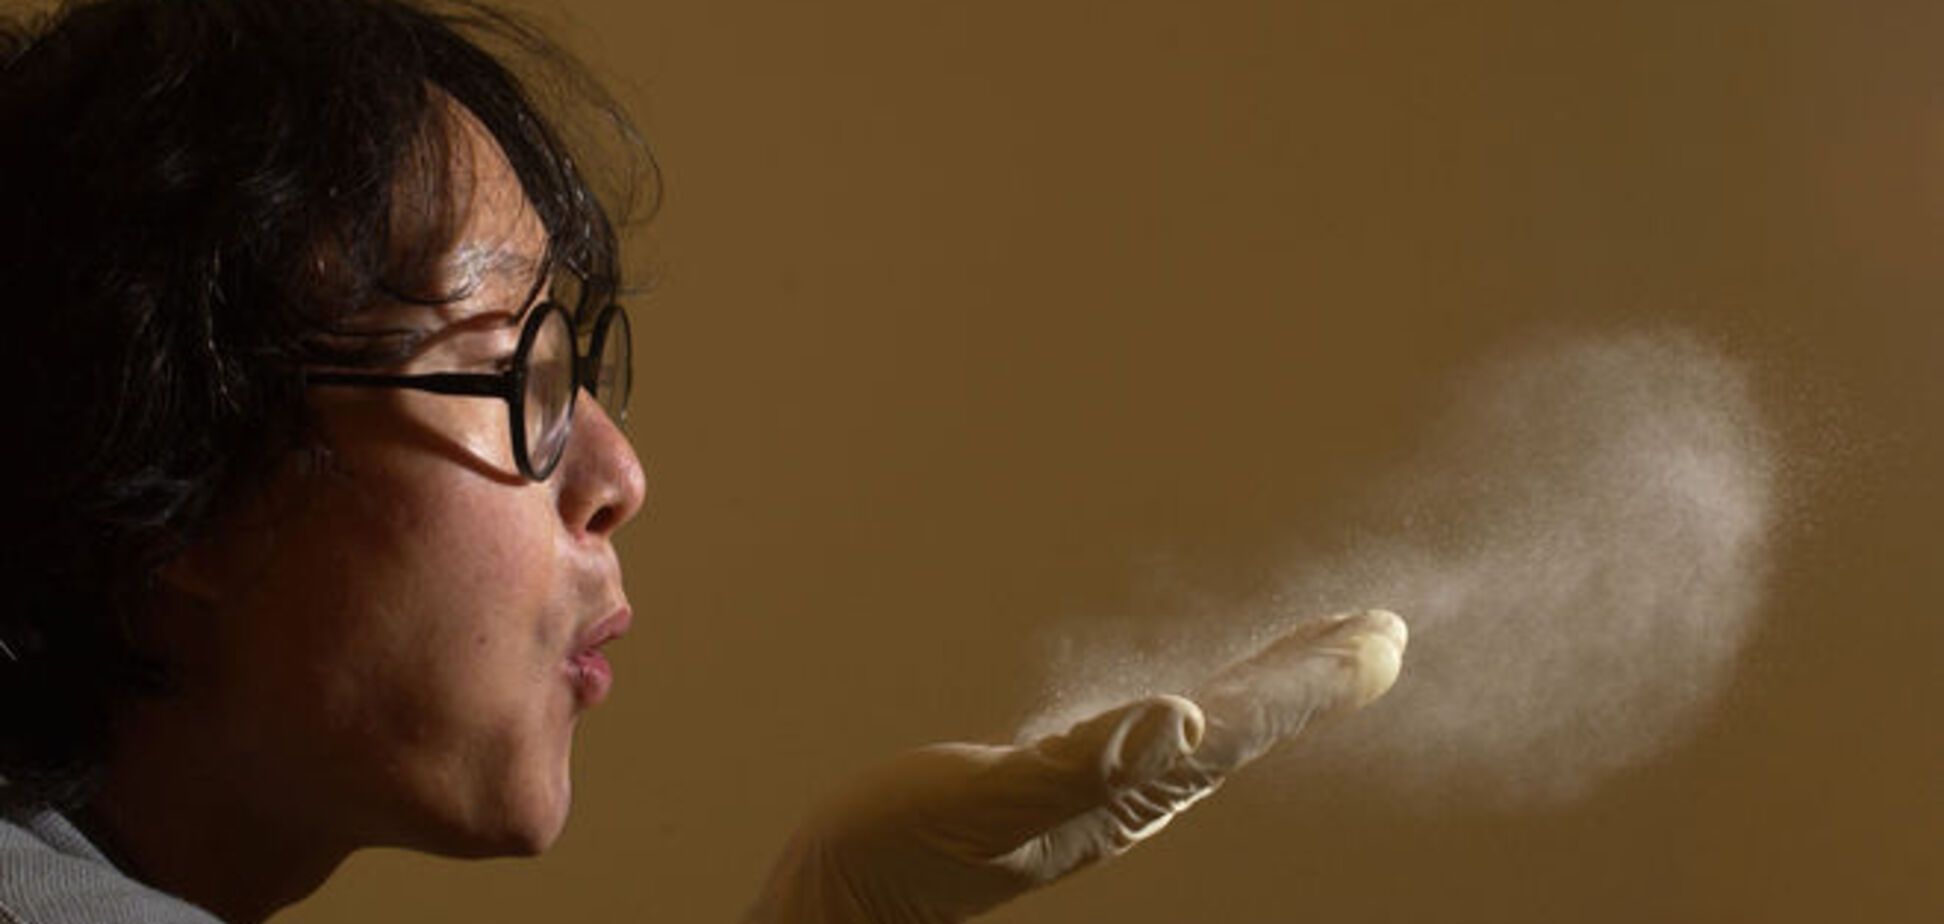 20 поразительных фактов об обычной пыли